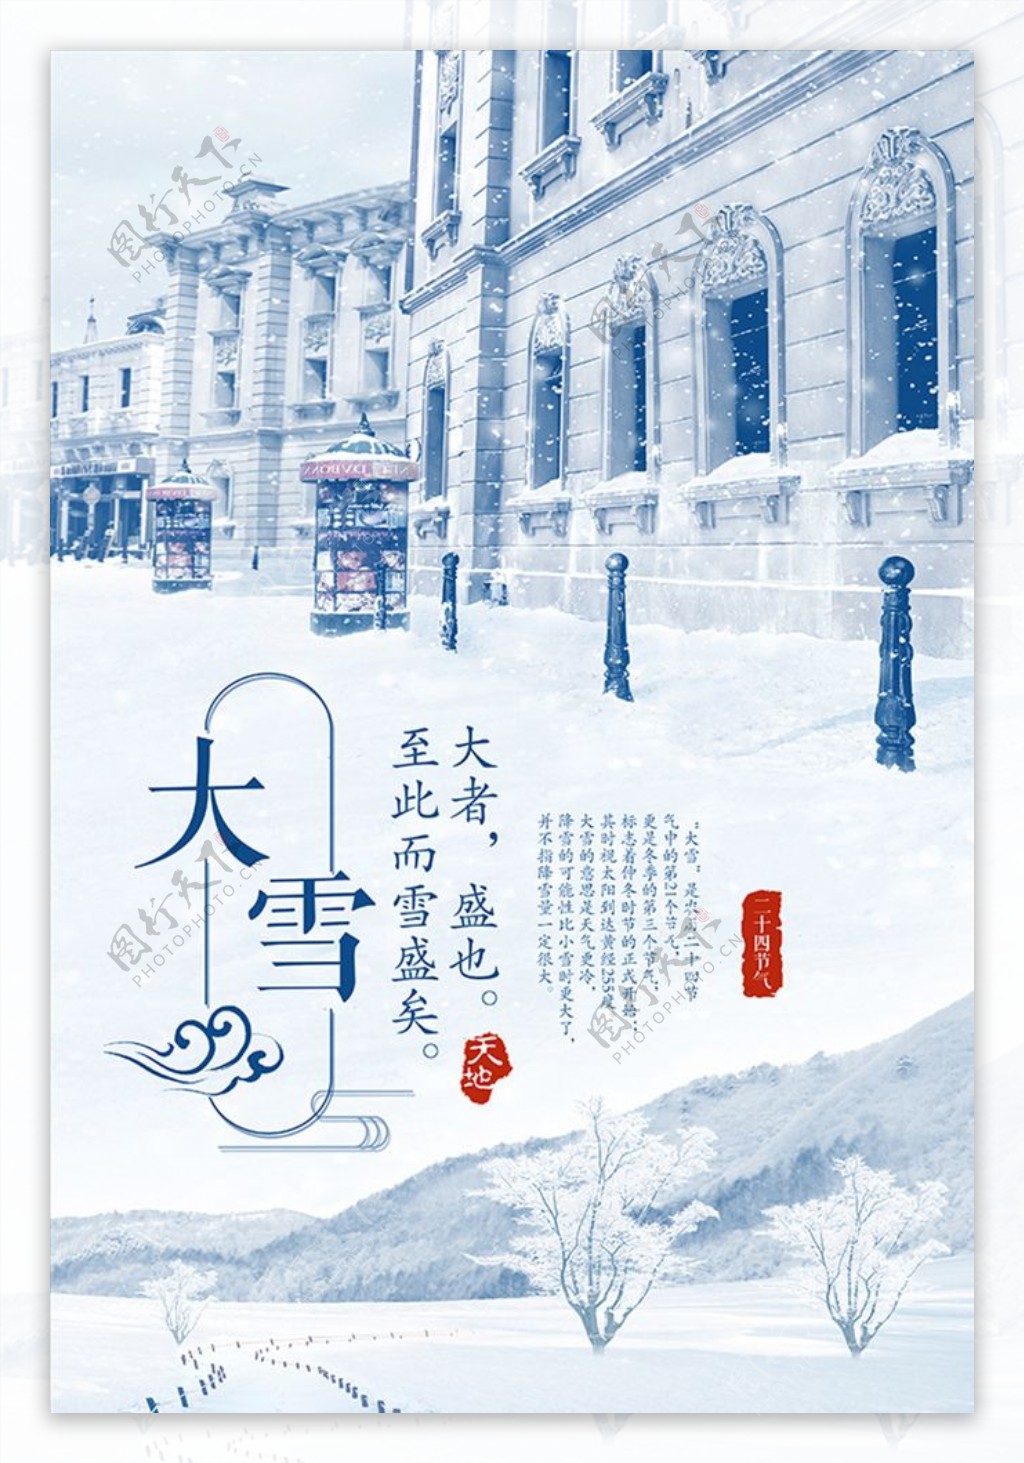 二十四气节之大雪系列海报设计